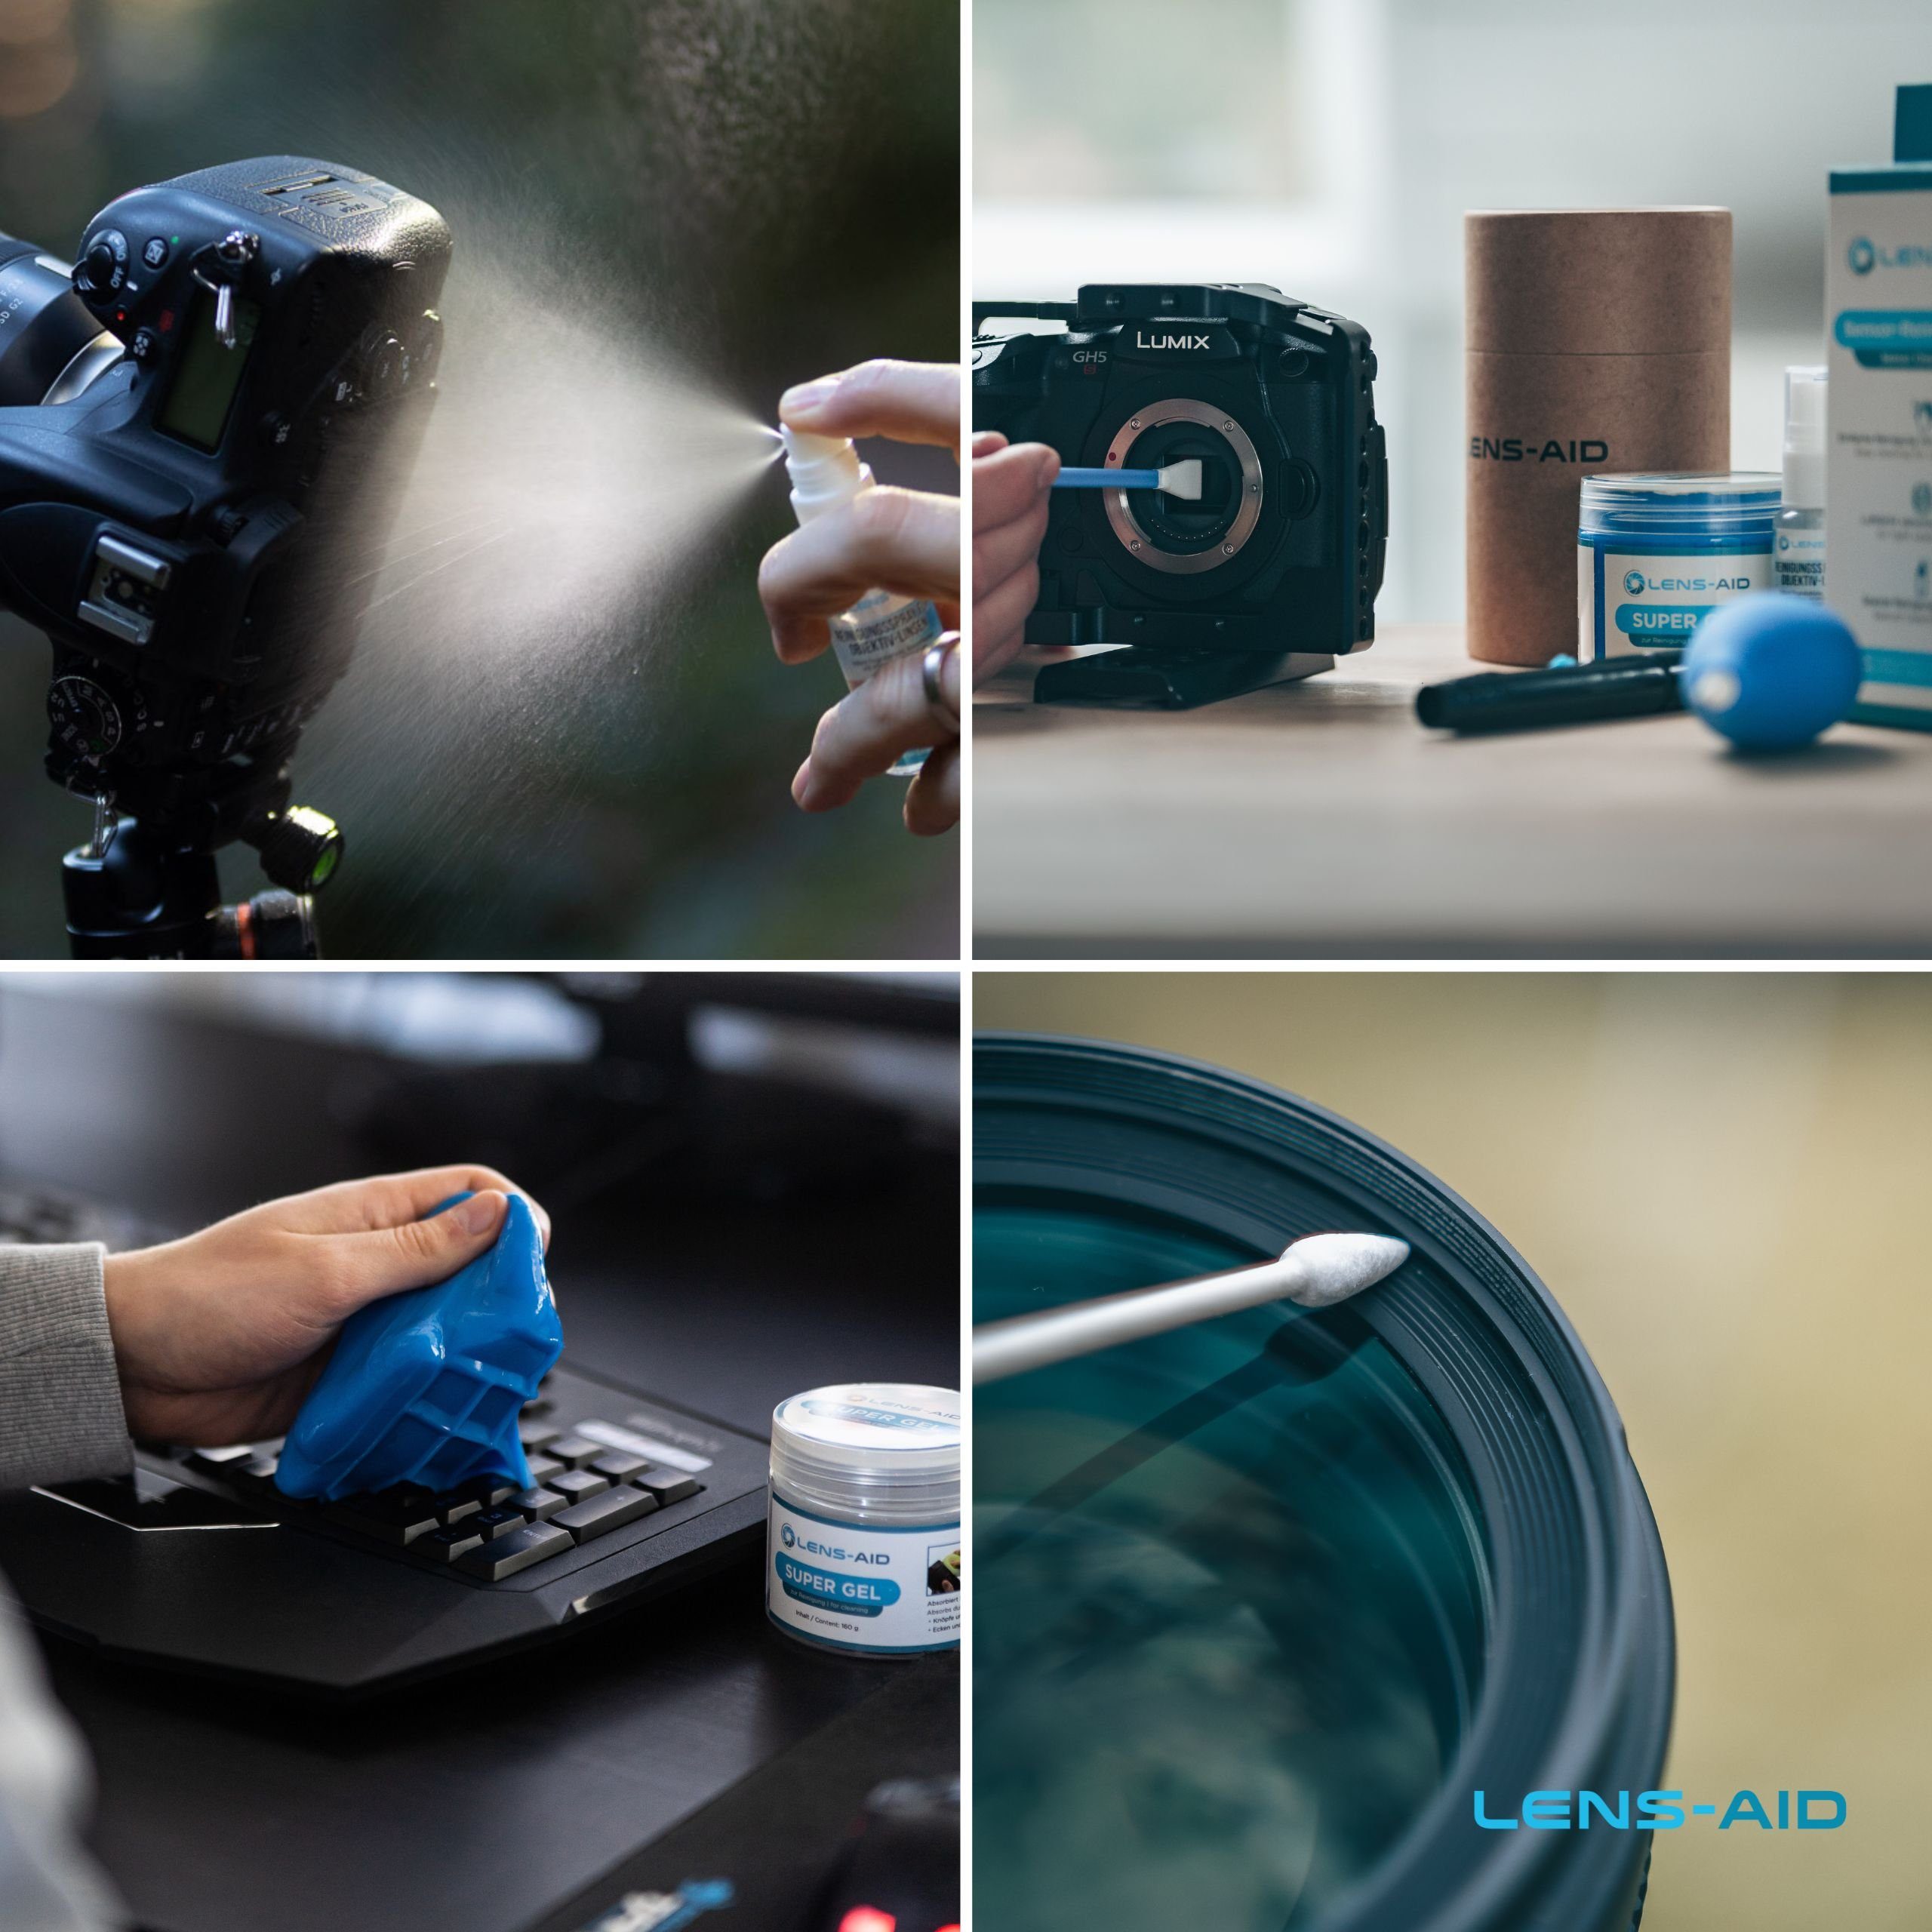 Sensor-Reinigungsset, Reinigungsgel (Spar-Set), Lens-Aid 8-in-1-Reinigungsset, Kamerazubehör-Set Kamera-Reinigungsbundle,